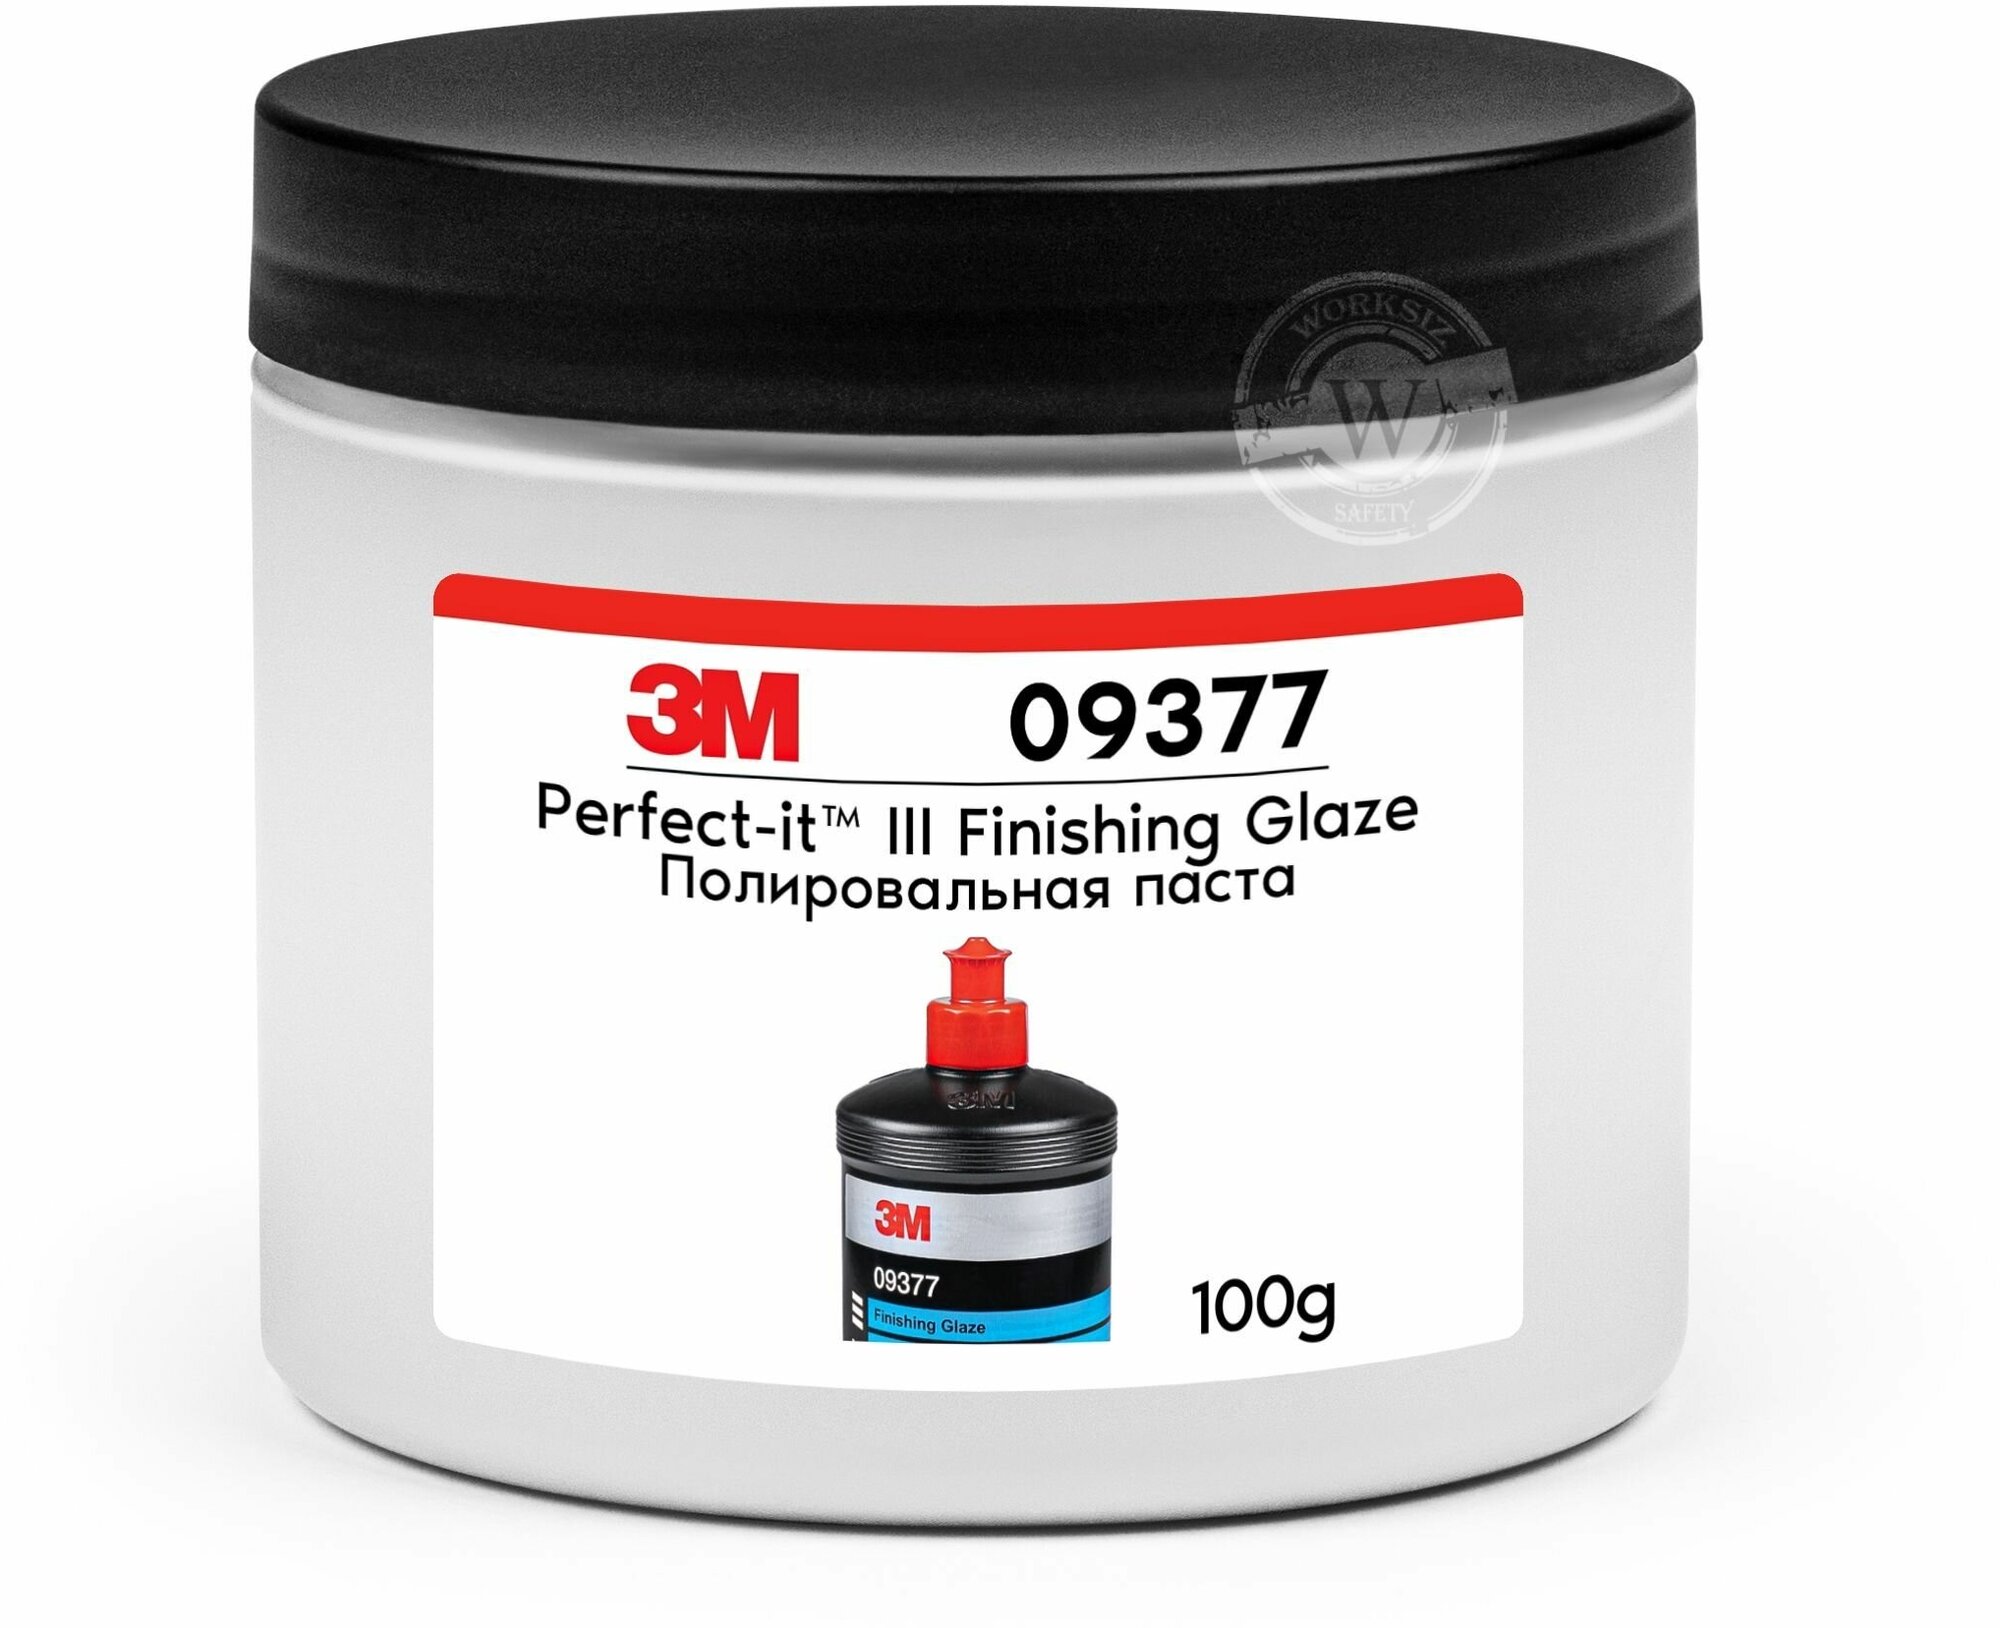 Неабразивная полировальная паста / полироль для защиты блеска 3М™ 09377 Perfect-it® III Finishing Glaze, 100 грамм